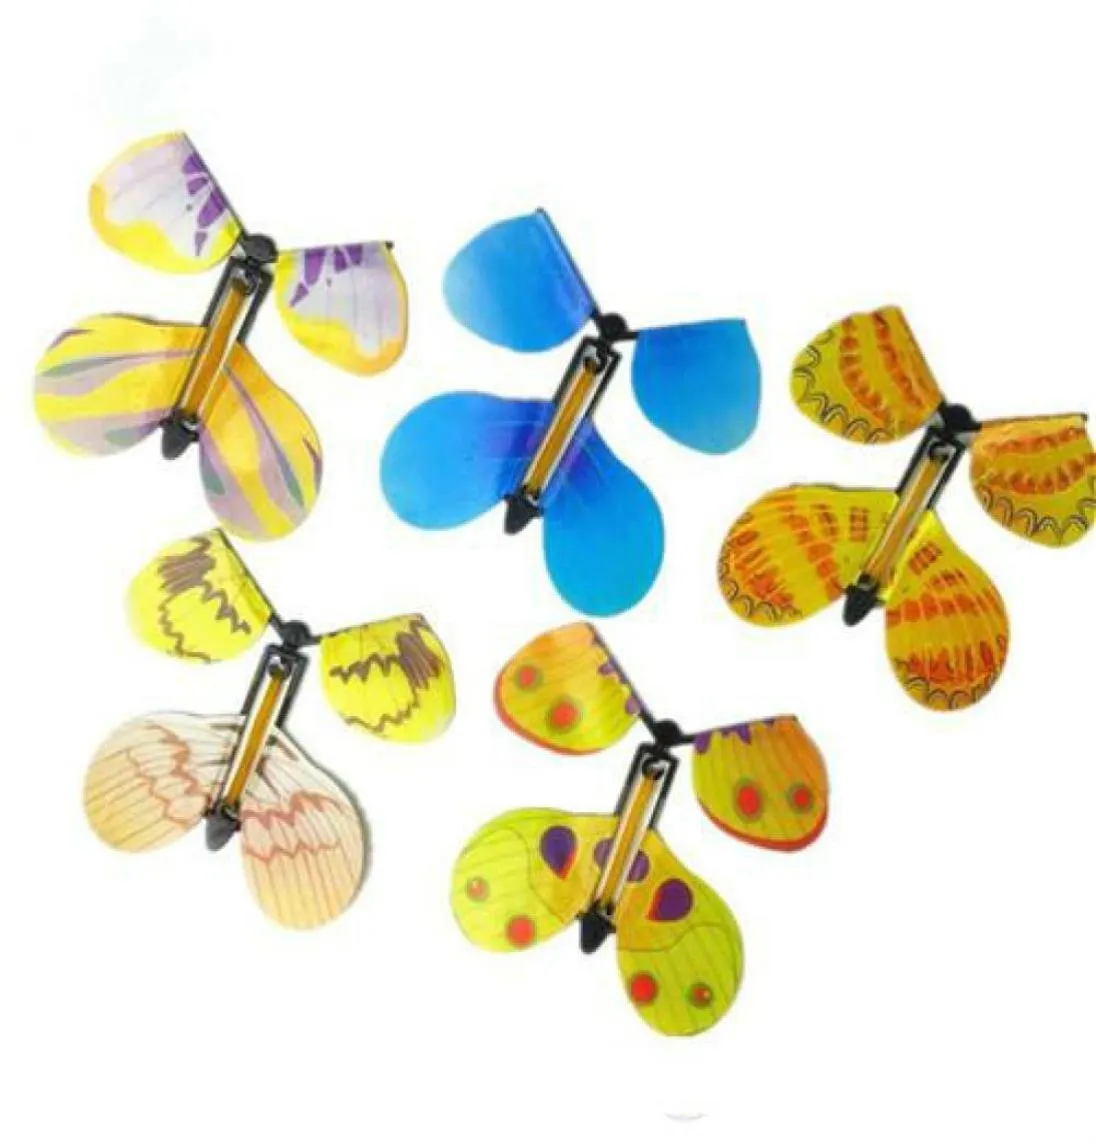 Jouets magiques Transformation de la main mouche papillon tours de magie accessoires drôle nouveauté Surprise blague mystique amusant classique Toys7240292